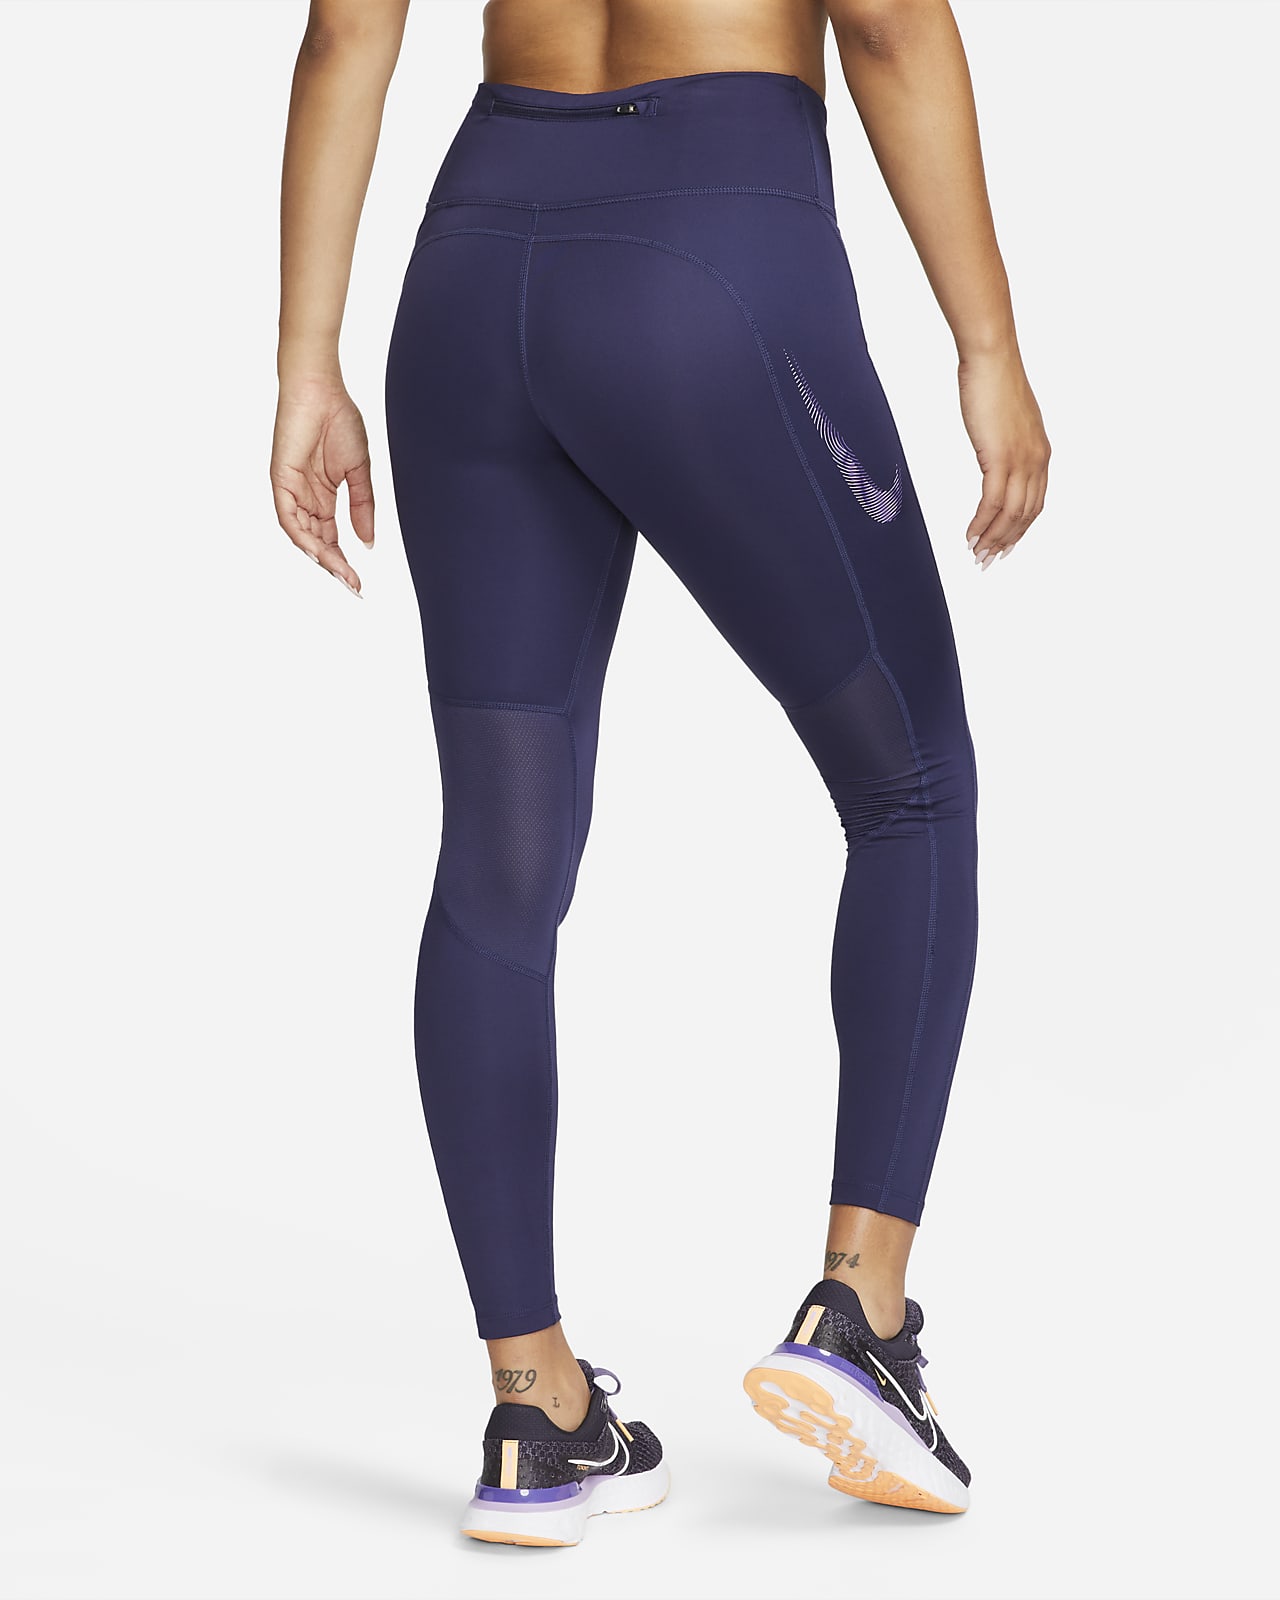 Nike Pro Damen-Leggings mit mittelhohem Bund und Grafik. Nike LU